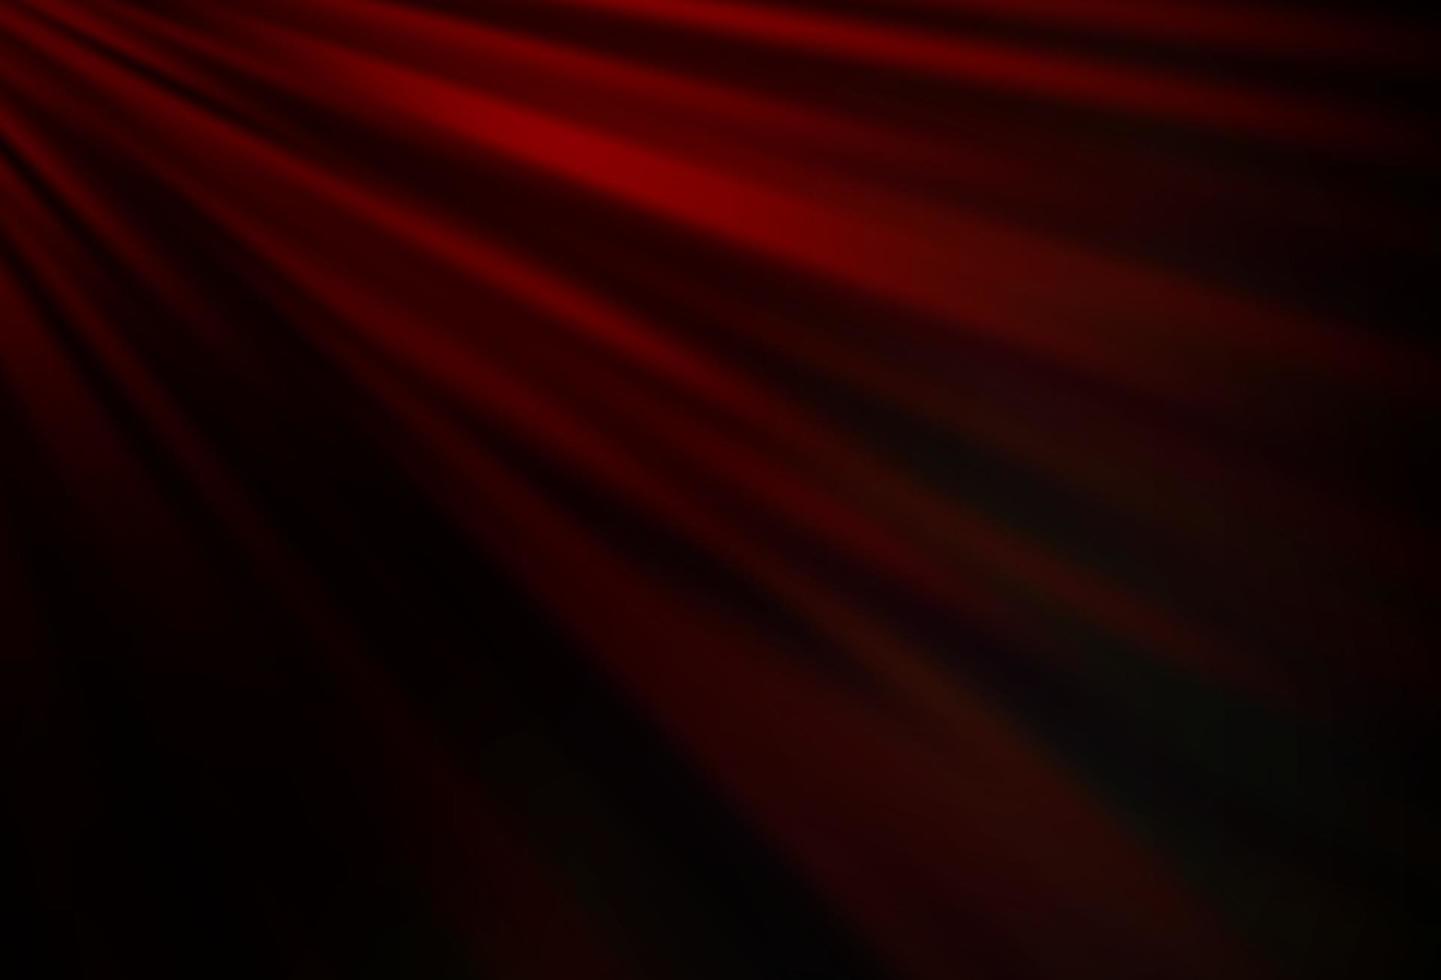 sfondo vettoriale rosso scuro con linee rette.